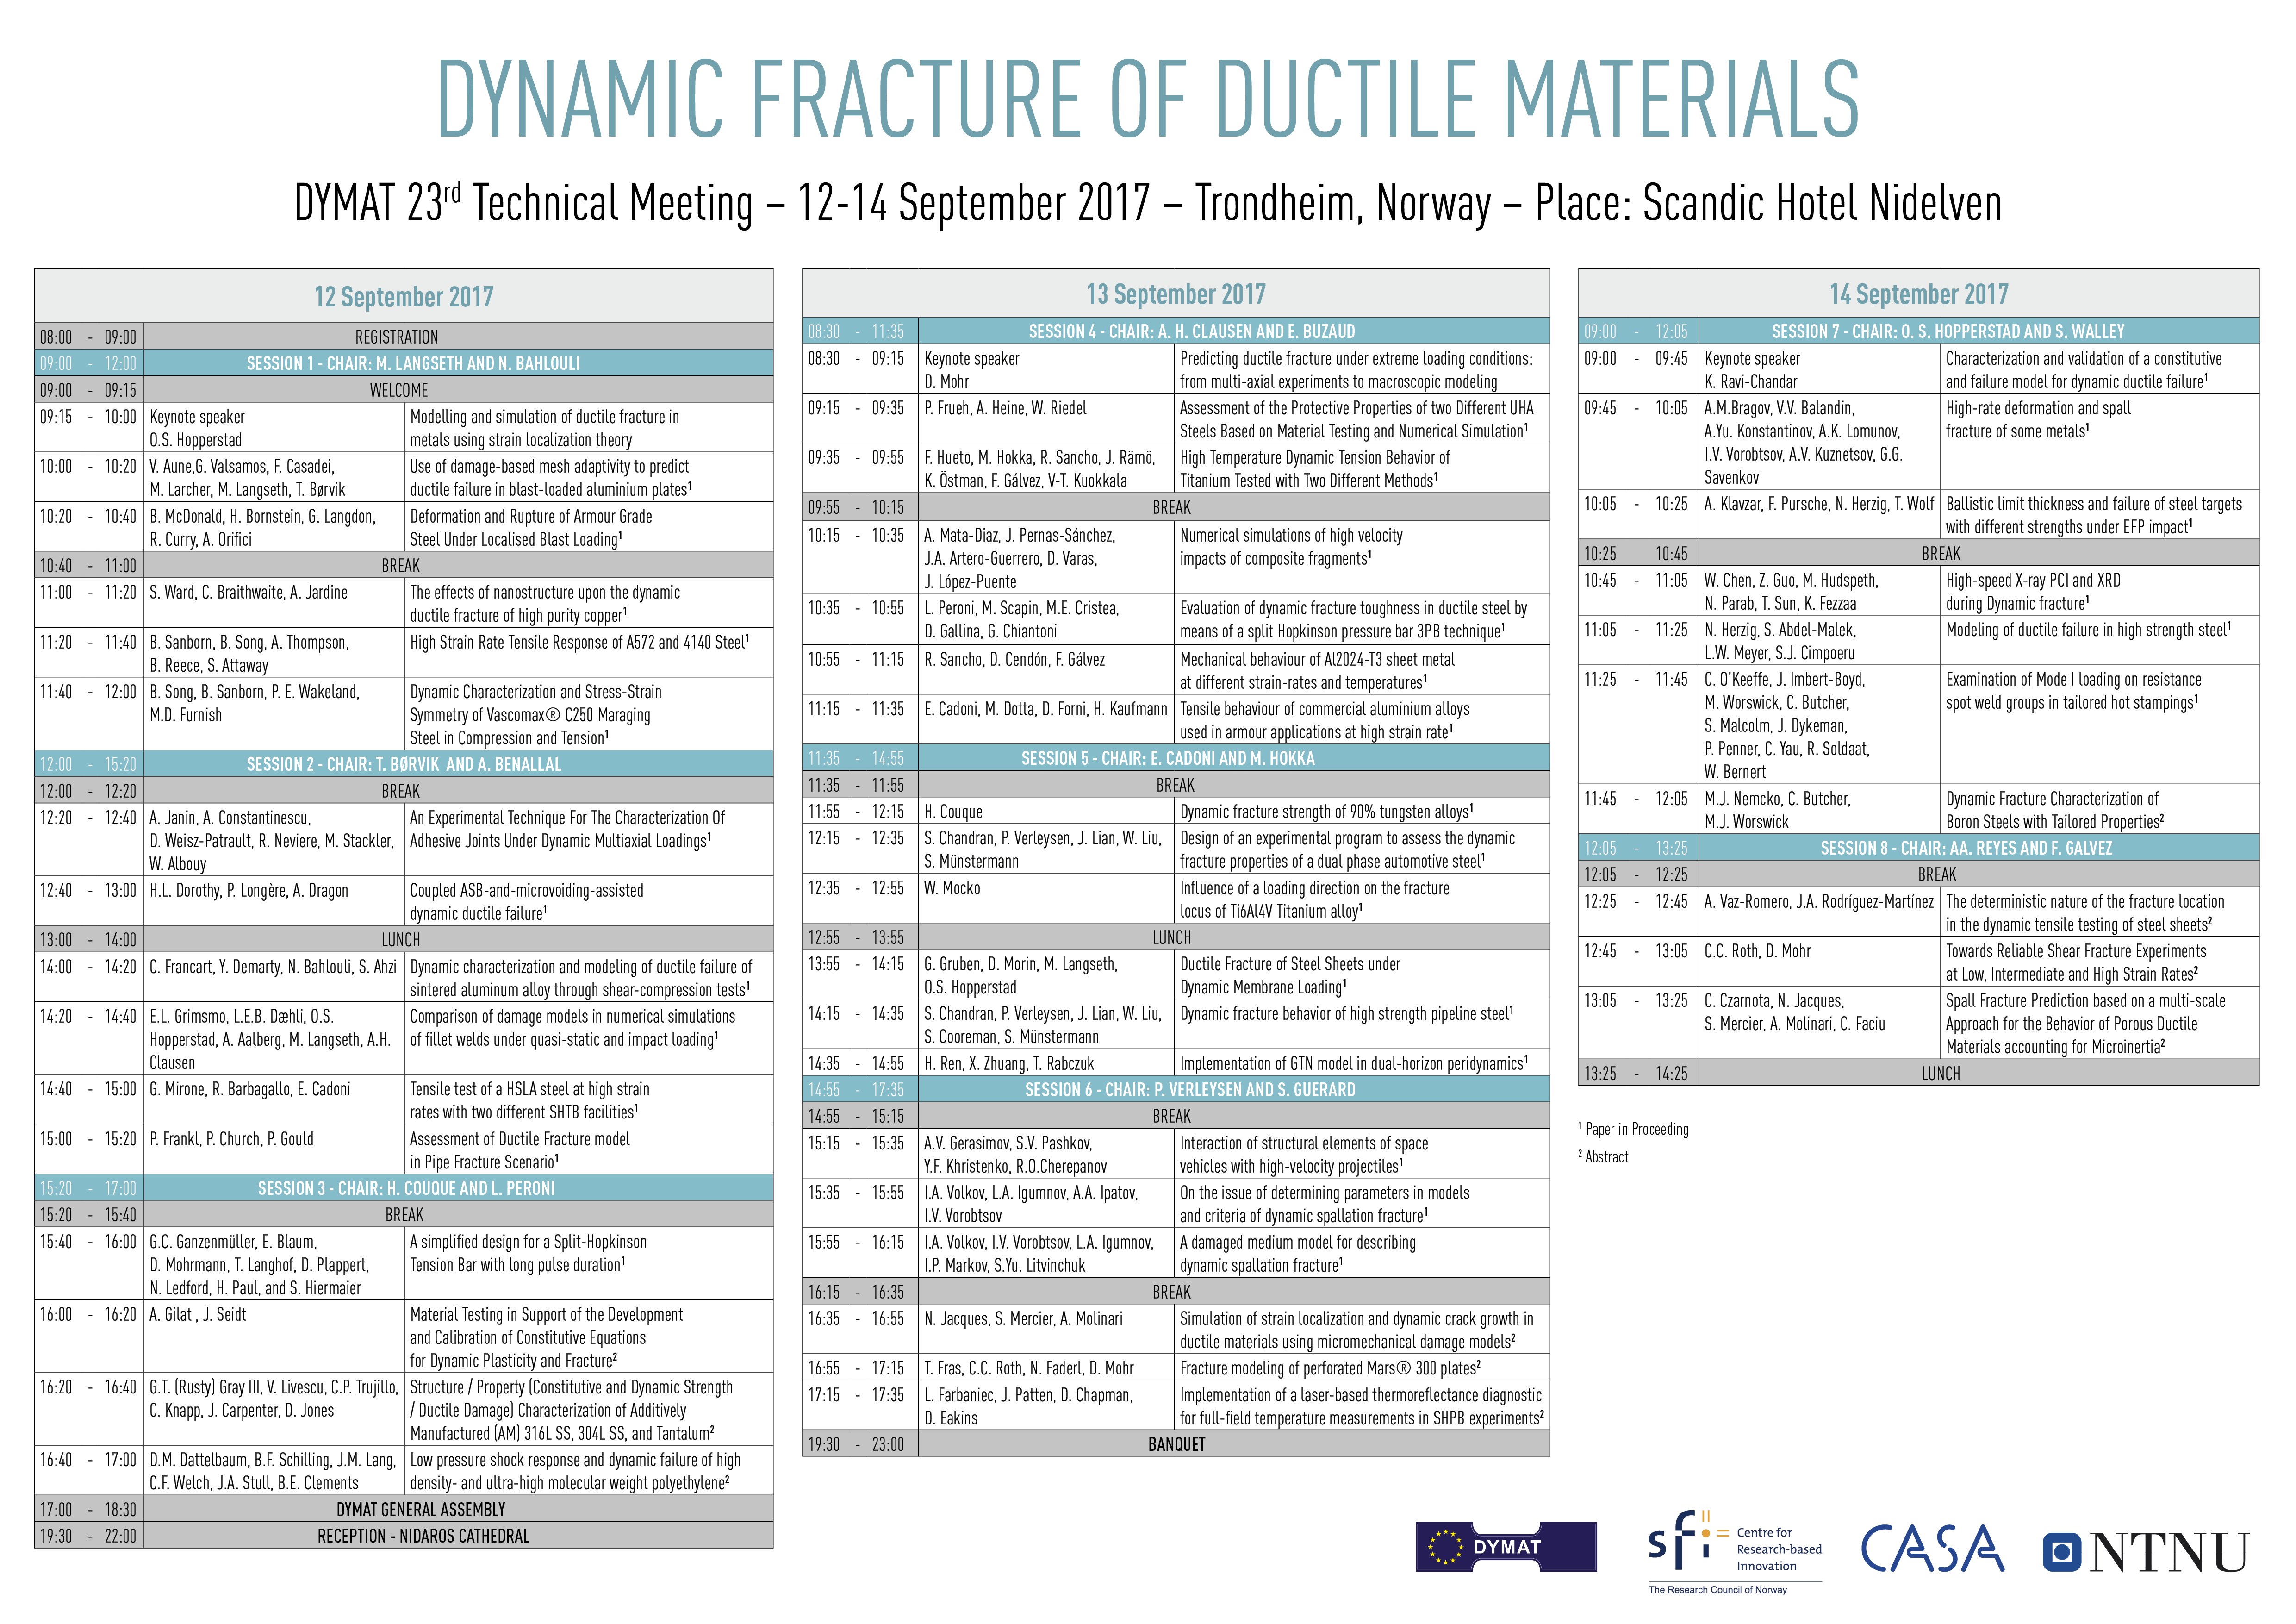 DYMAT 23rd Technical meeting programme